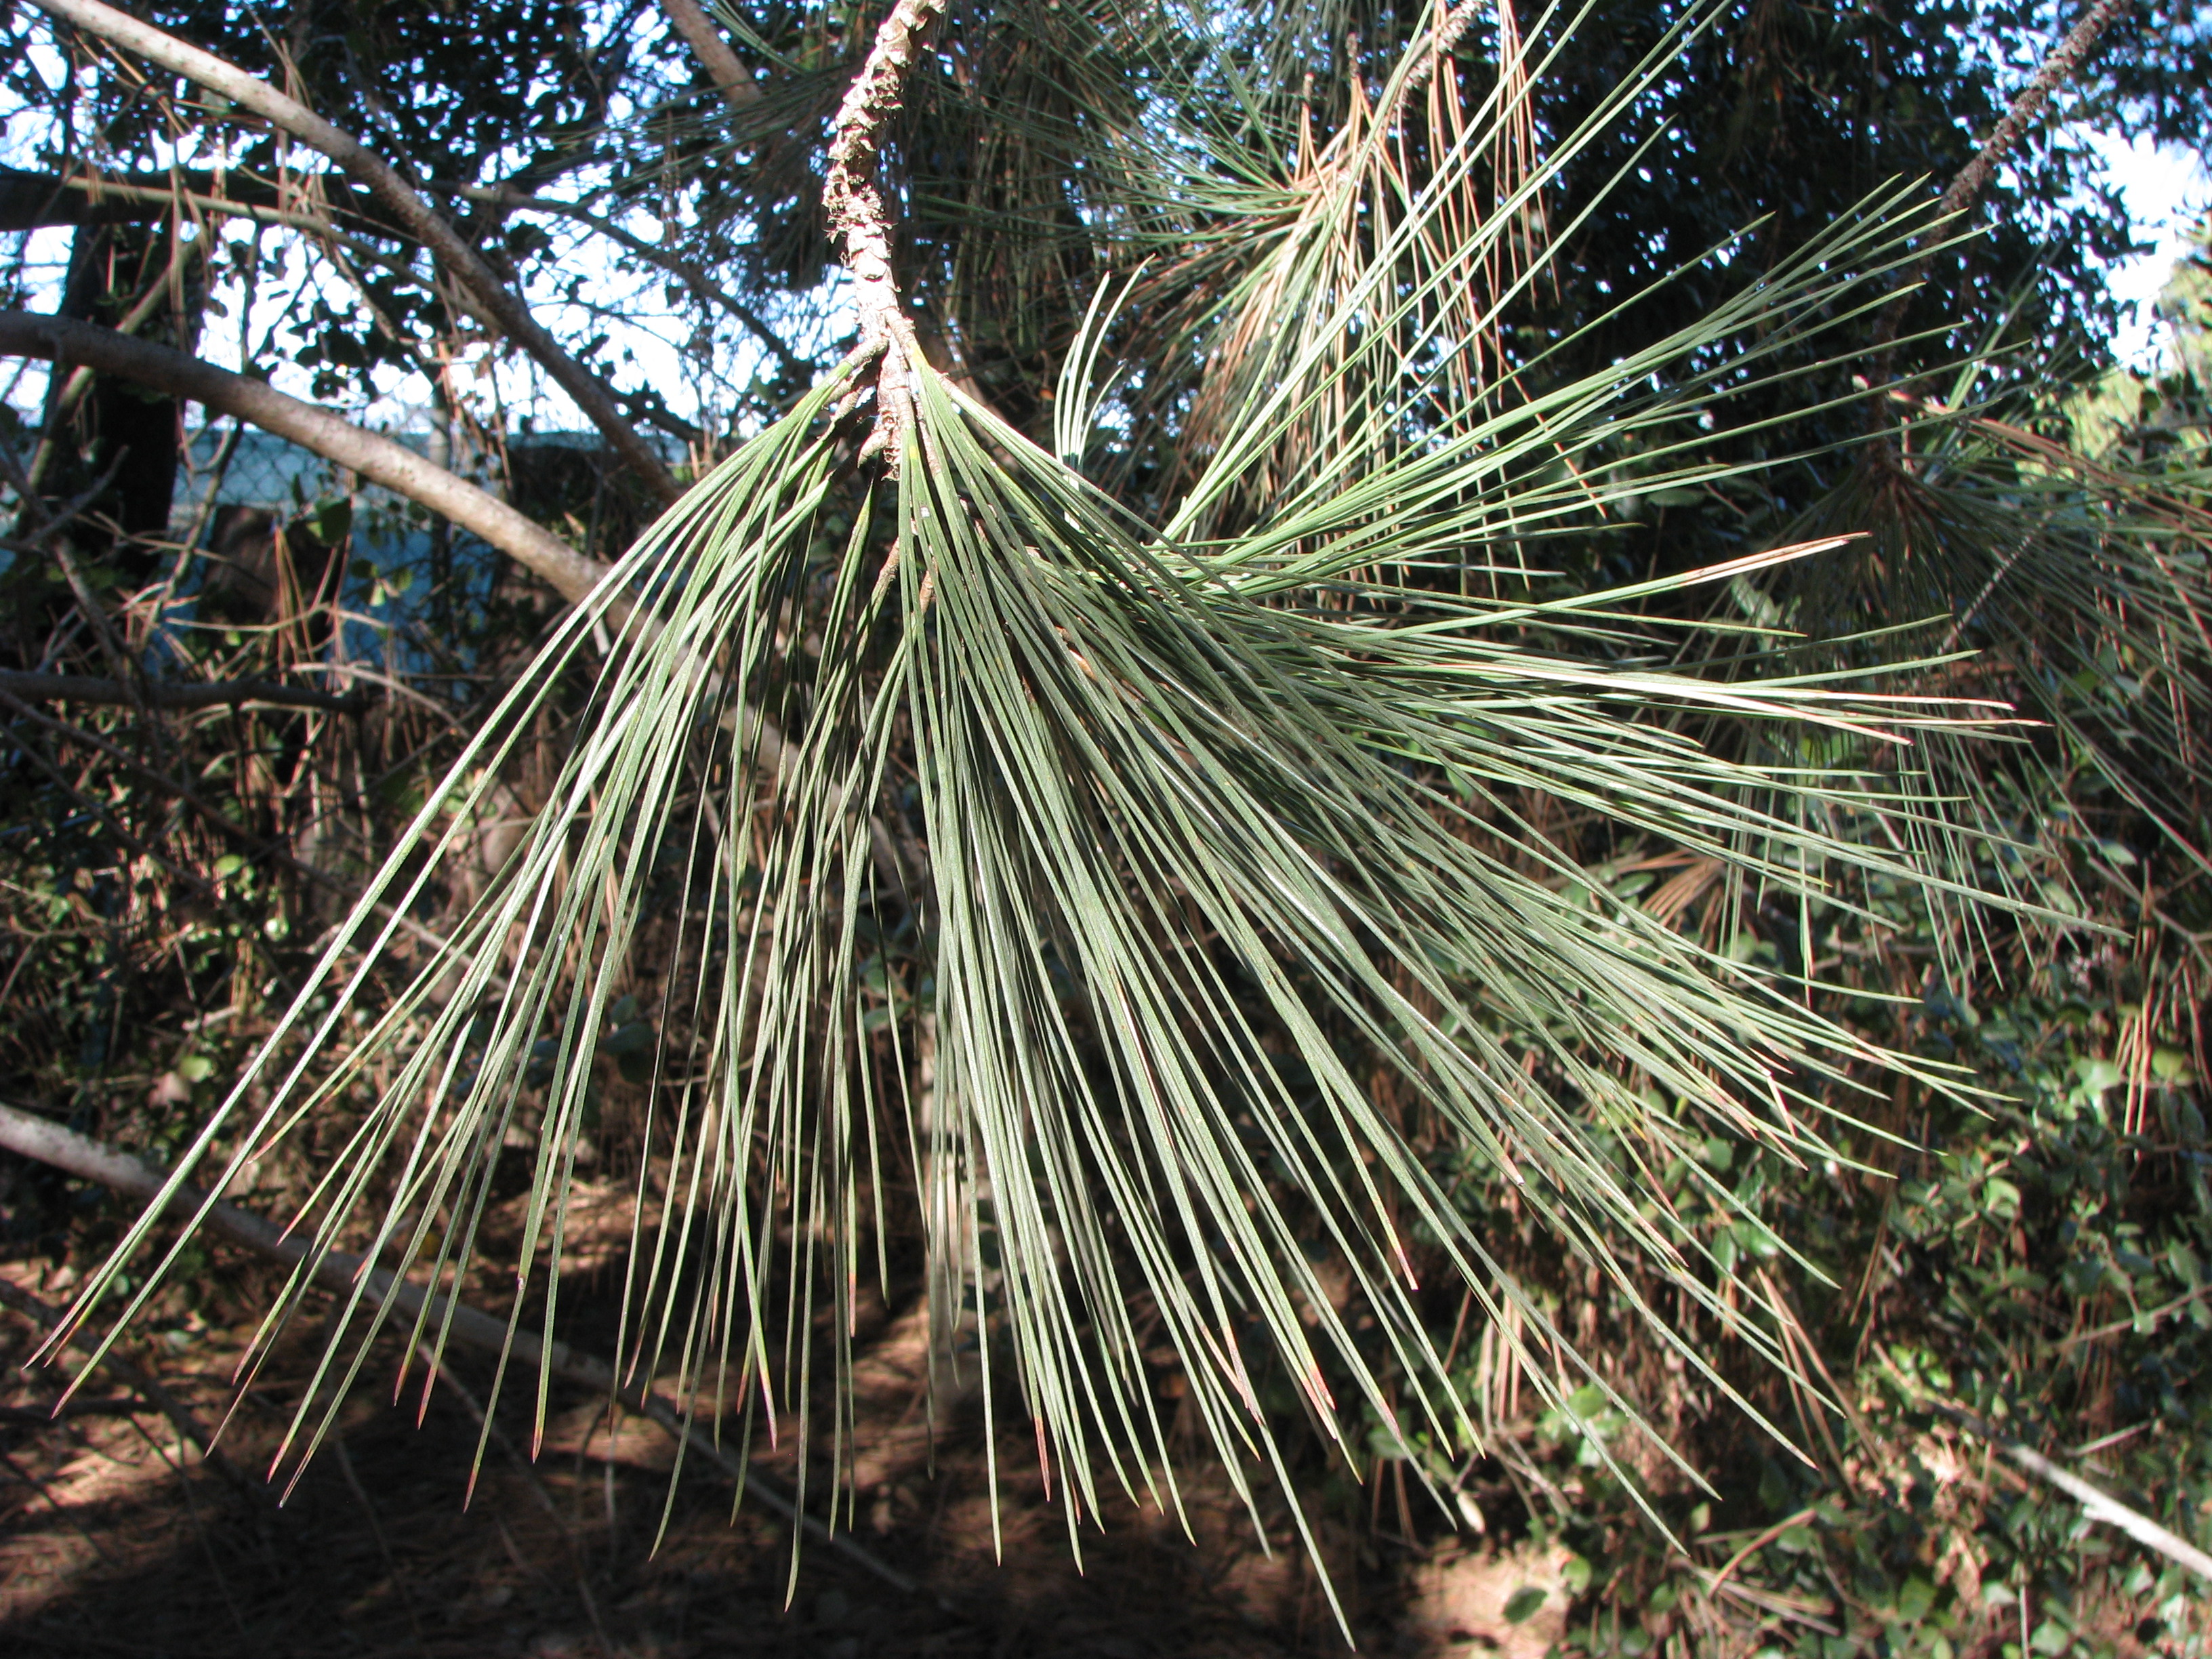 Torrey Pine